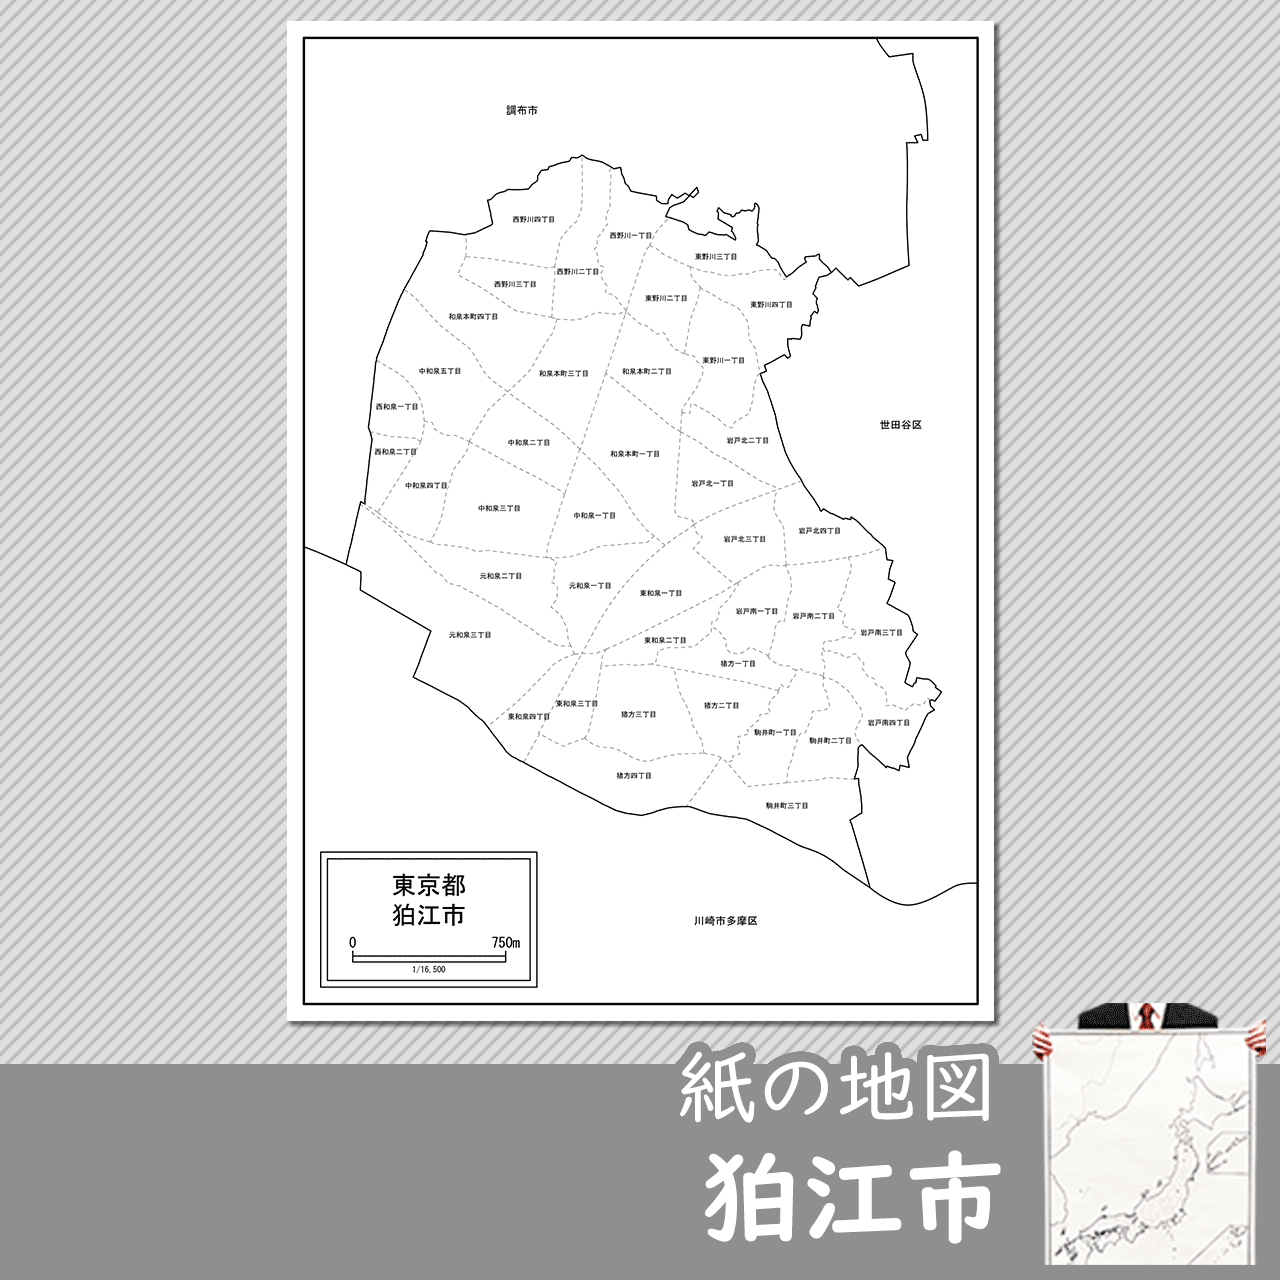 狛江市の紙の白地図のサムネイル